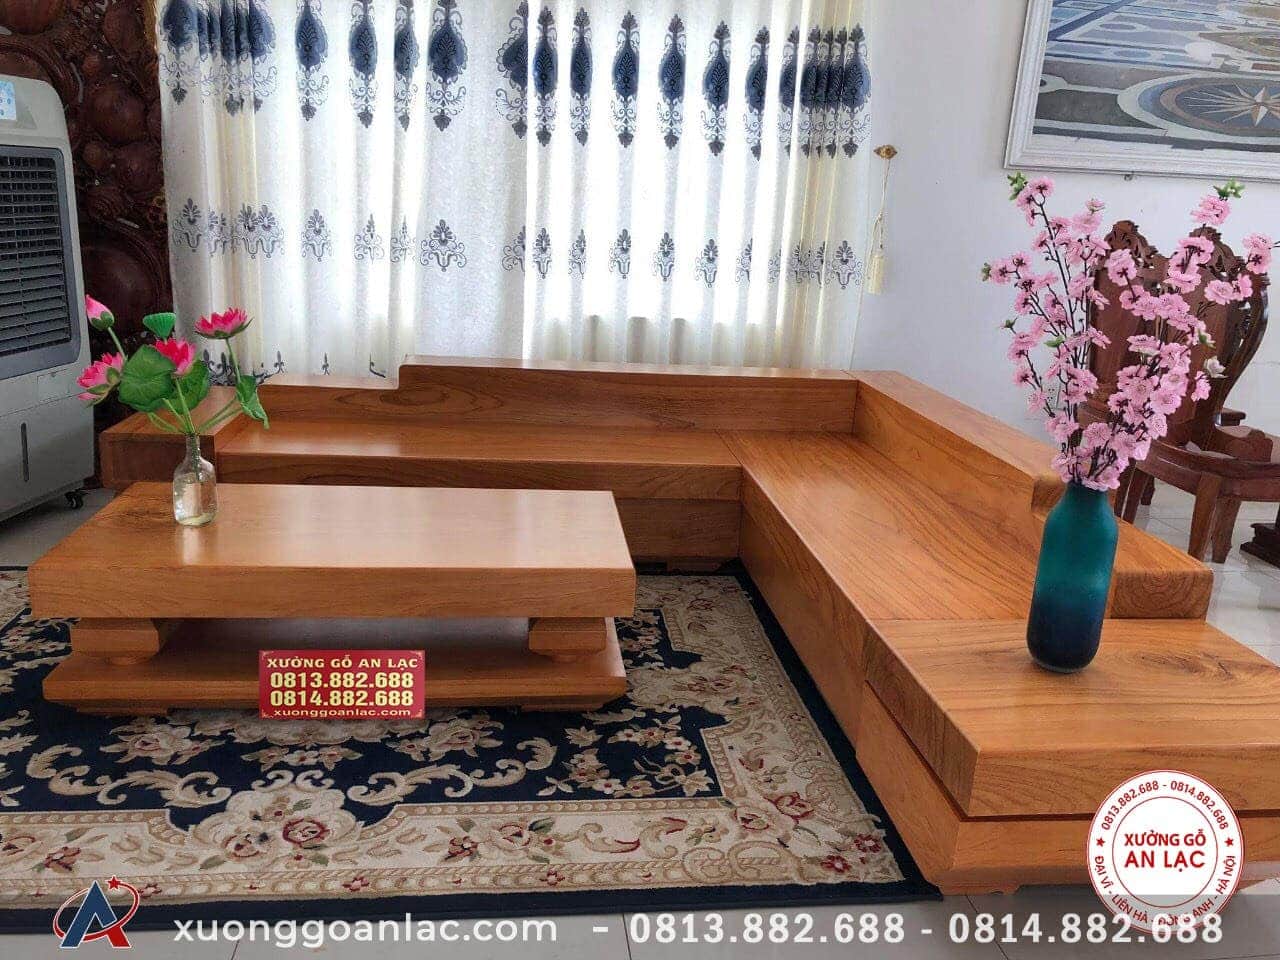 Bộ sofa nguyên khối gỗ gõ đỏ Việt Trì: Với hình ảnh bộ sofa nguyên khối gỗ gõ đỏ tại Việt Trì, bạn sẽ không thể khỏi kinh ngạc trước độ đẹp và uyển chuyển. Bộ sofa được làm bằng gỗ gõ đỏ tự nhiên, có kiểu dáng đa dạng và hiện đại, vô cùng phù hợp cho không gian phòng khách của bạn.